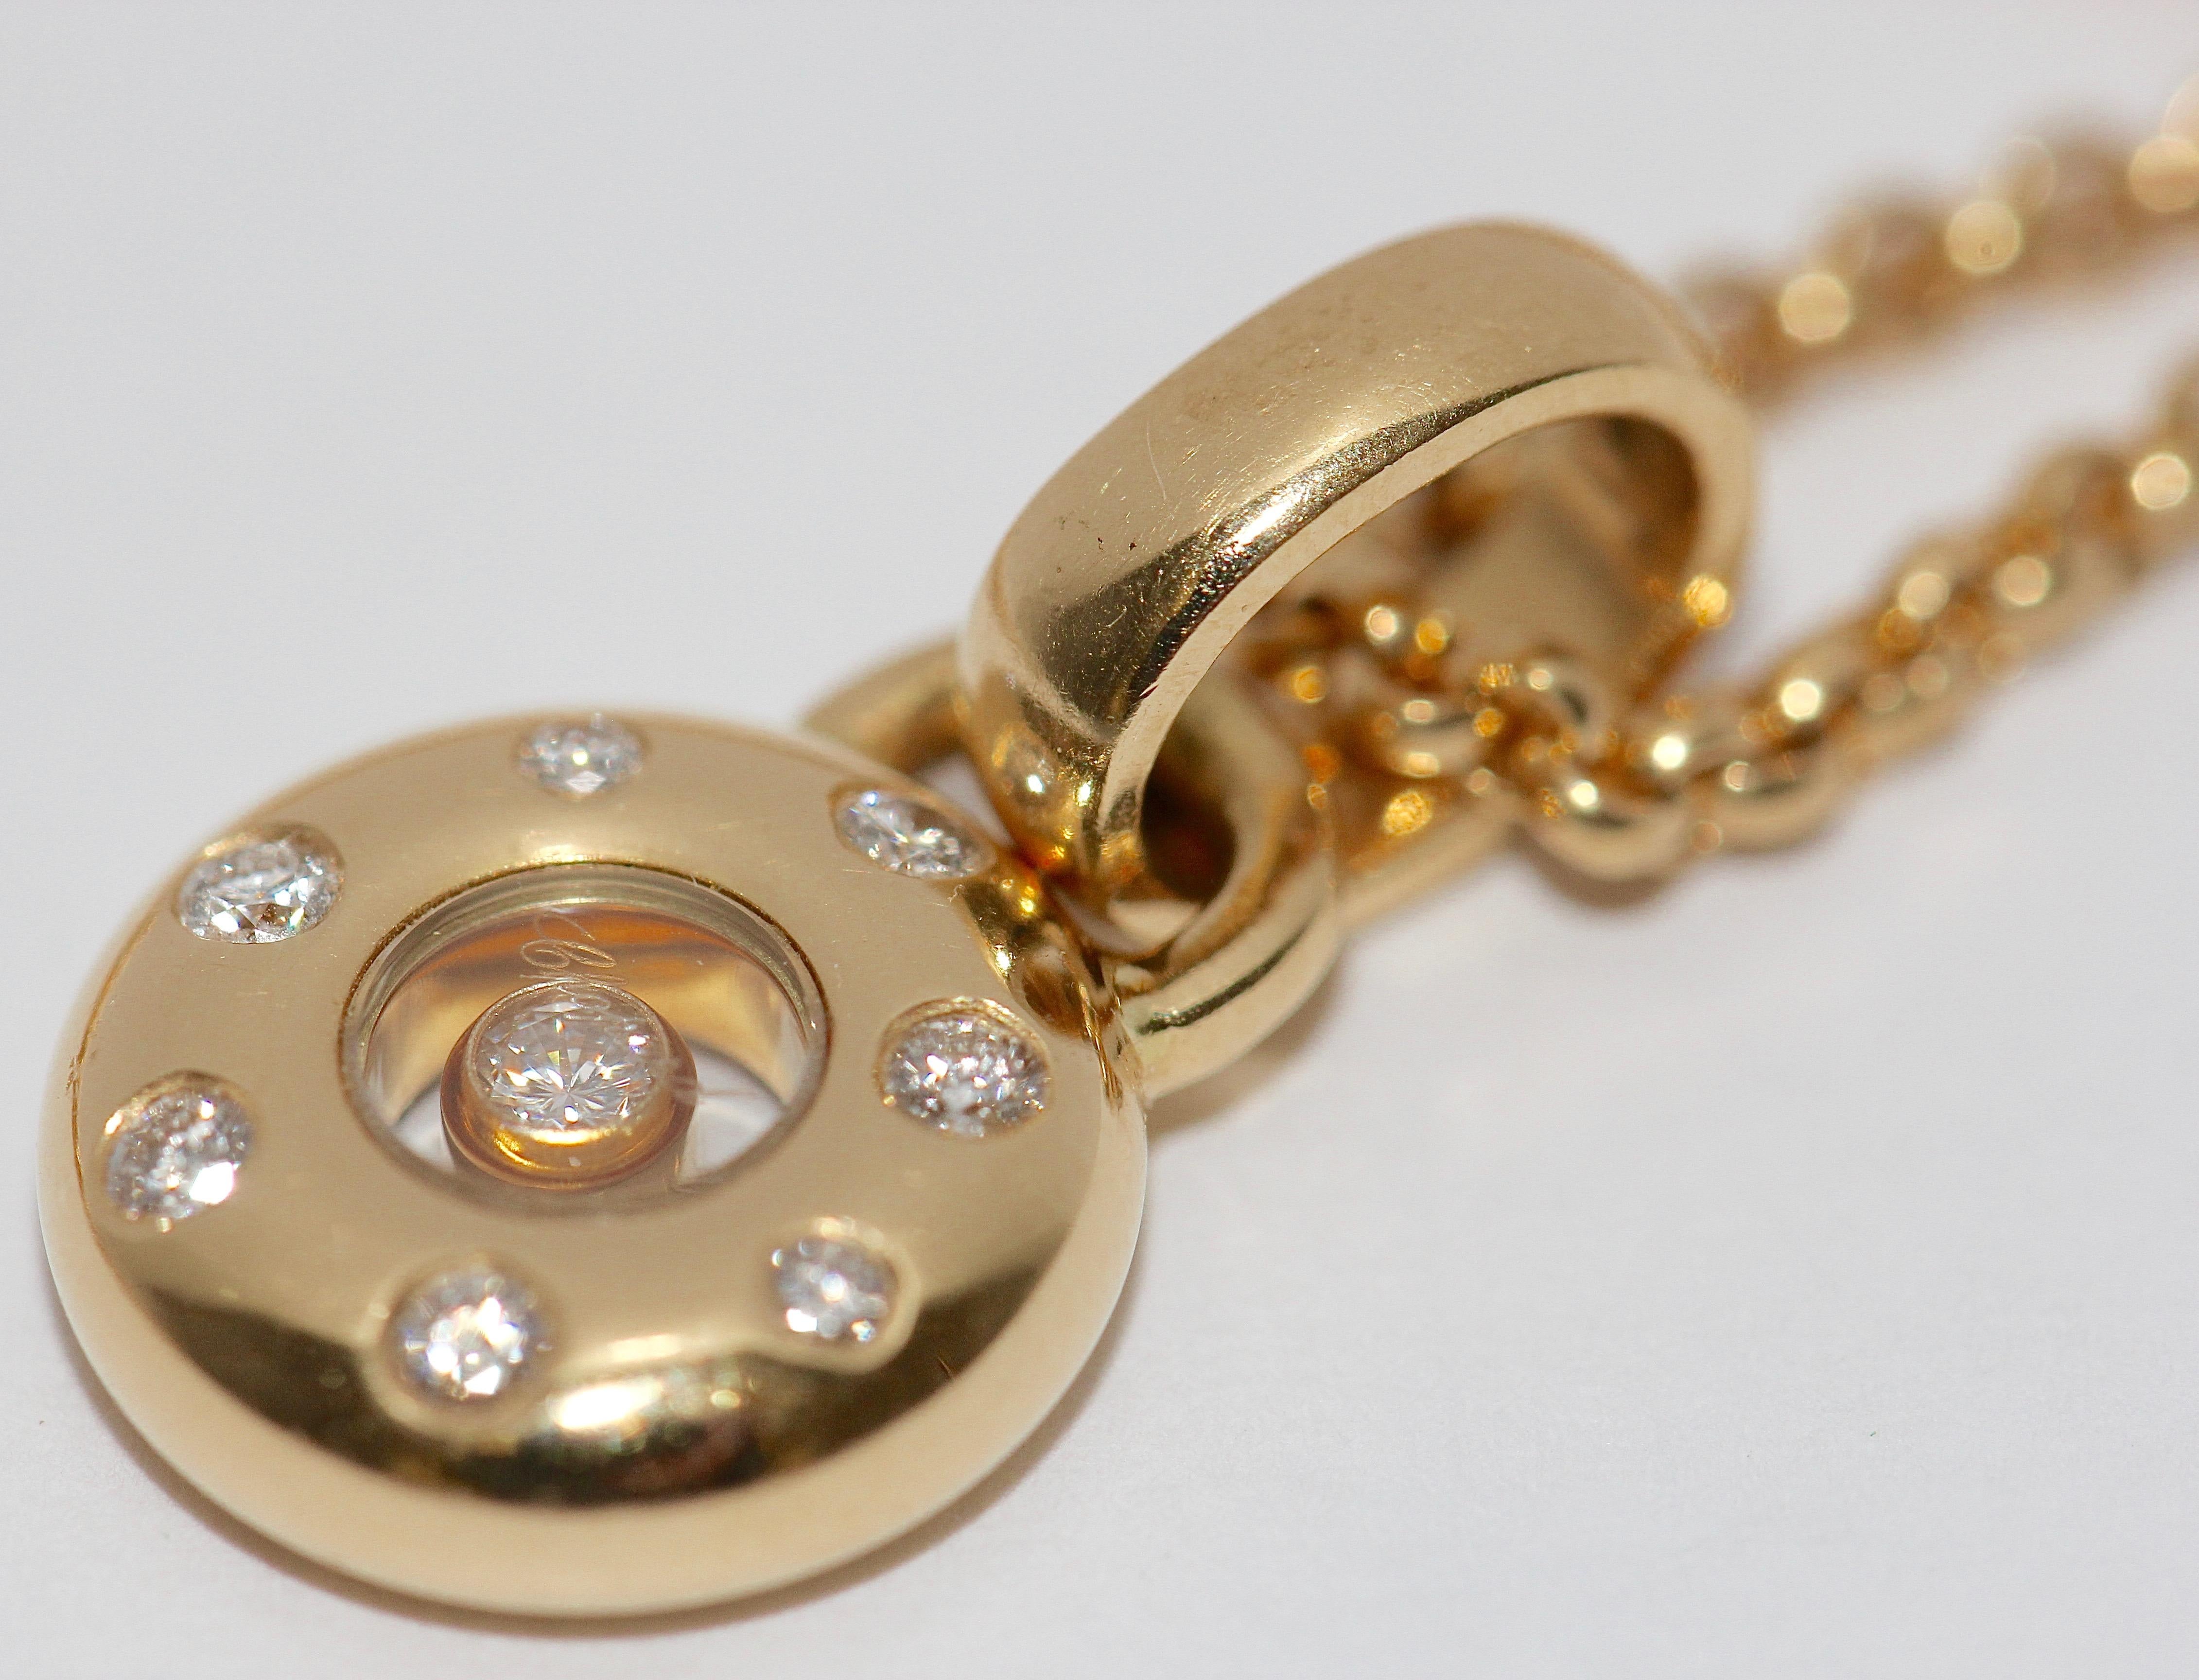 Chopard Happy Diamonds Diamantanhänger, Halskette aus 18 Karat Gold.

Anhänger und Kette original Chopard, 18 Karat Gold.

Durchmesser des Anhängers 11,5 mm
Gesamtlänge der Kette 420mm

Gesamtgewicht Kette mit Anhänger: 14 Gramm.

Sehr guter Zustand.